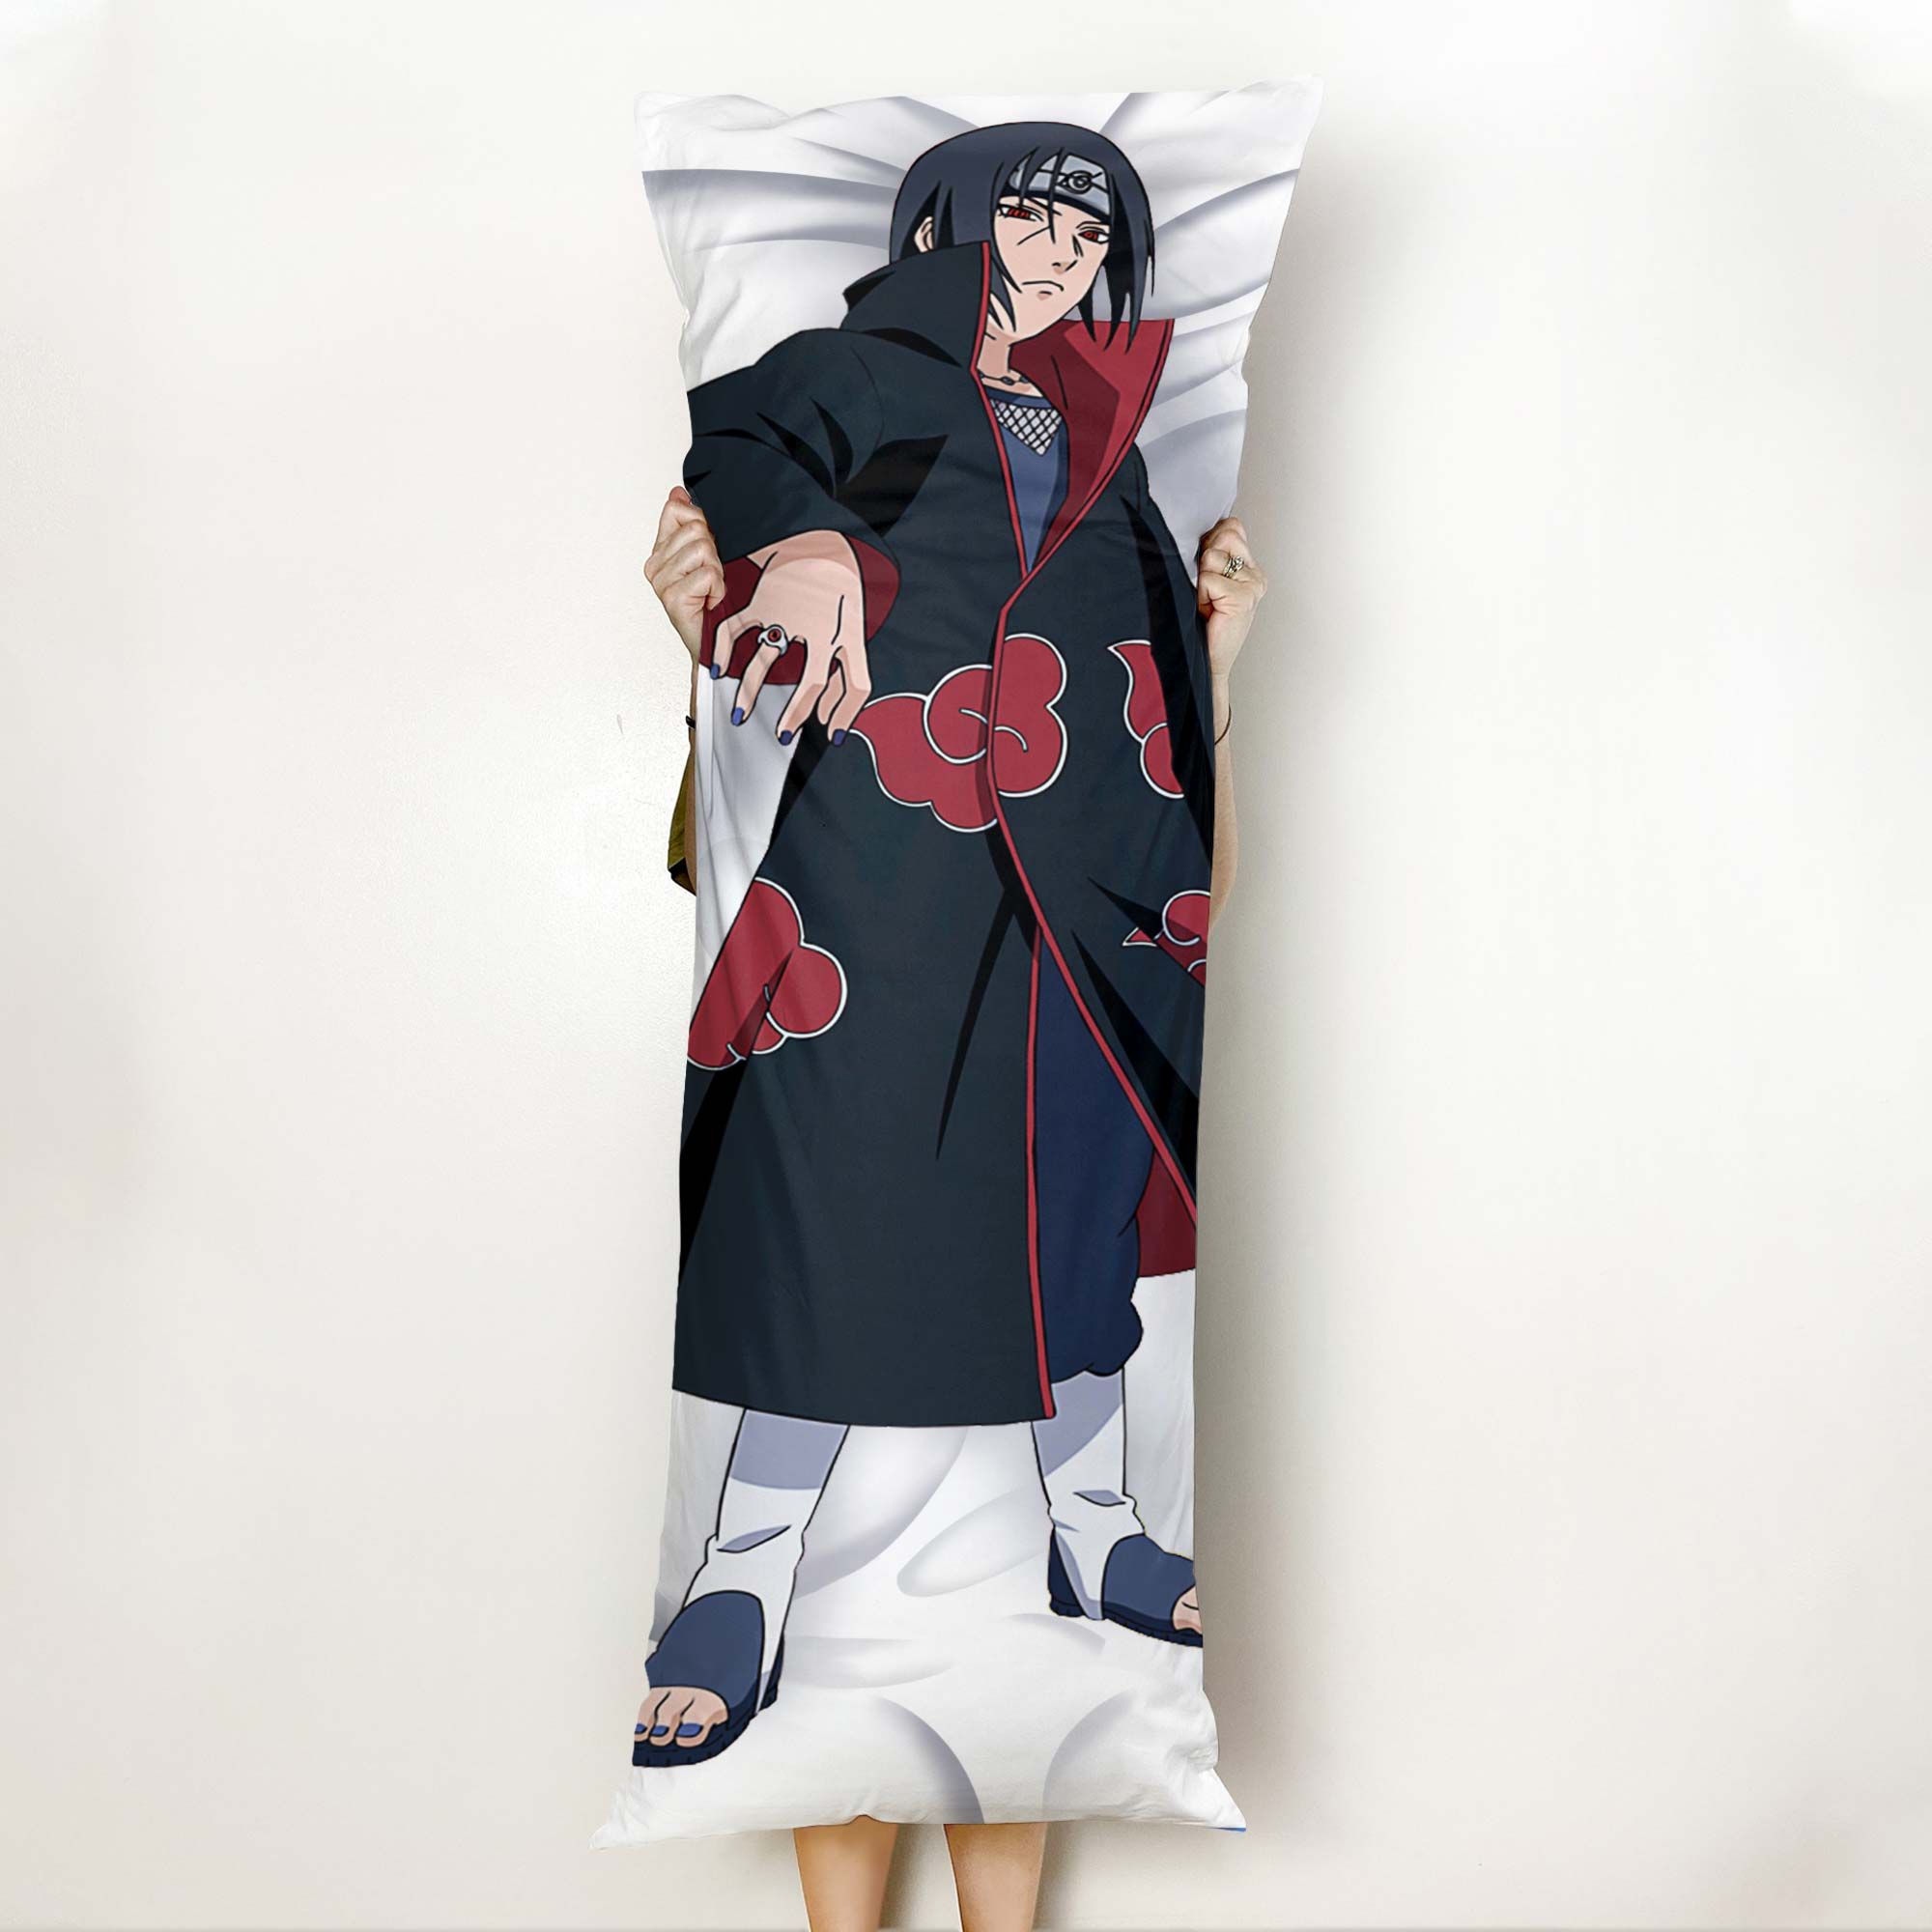 Akatsuki Itachi Body Pillow Cover Custom Naruto Anime Gifts Official Merch GO0110